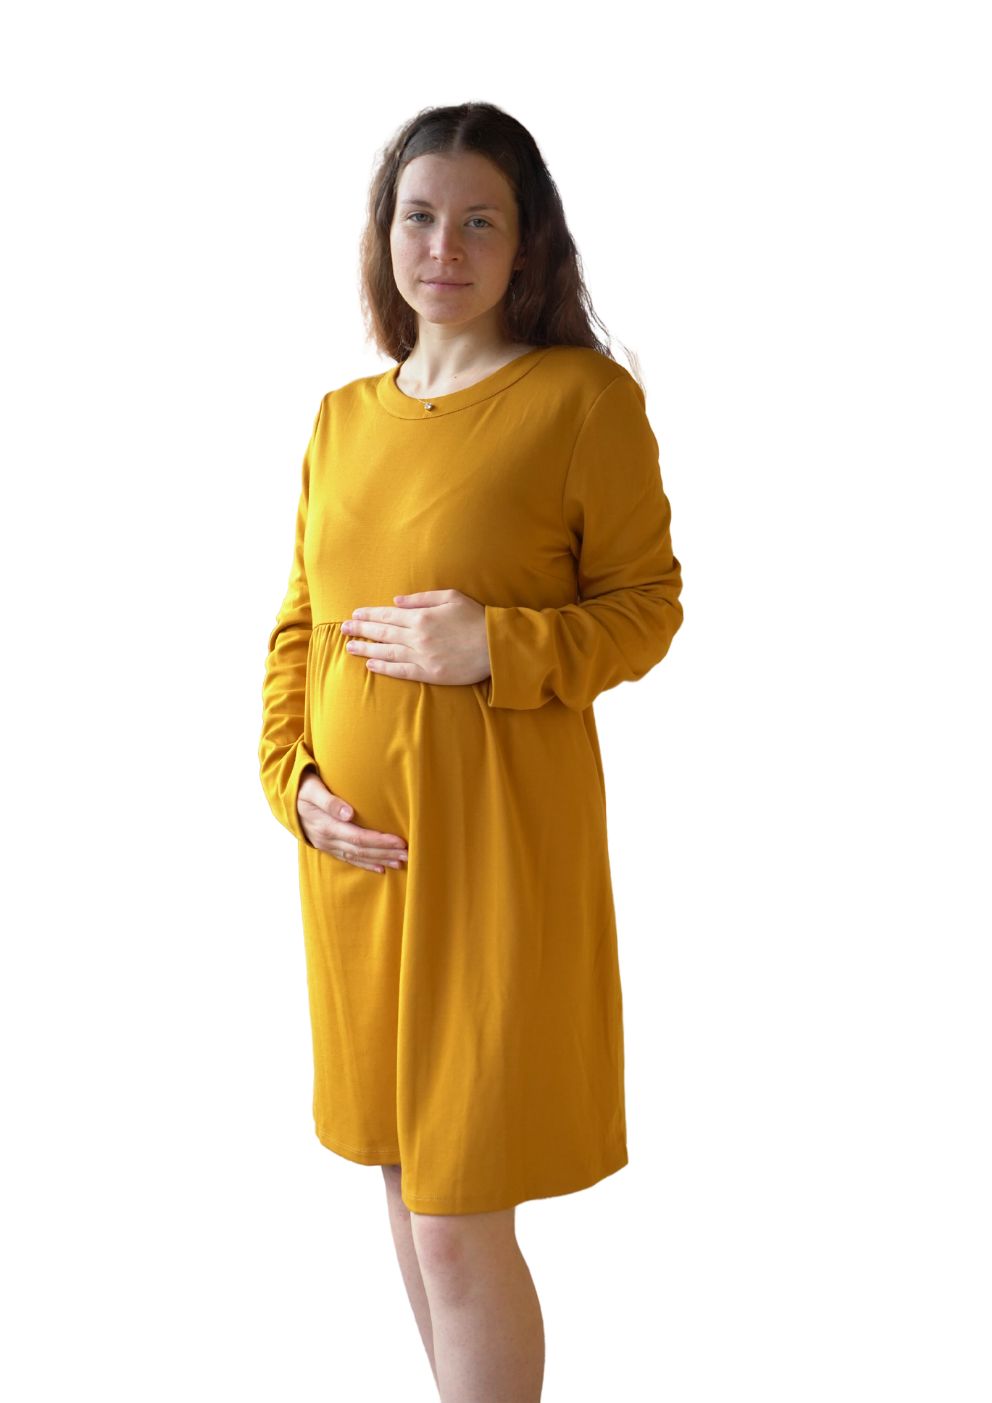 Mustard yellow maternity dress